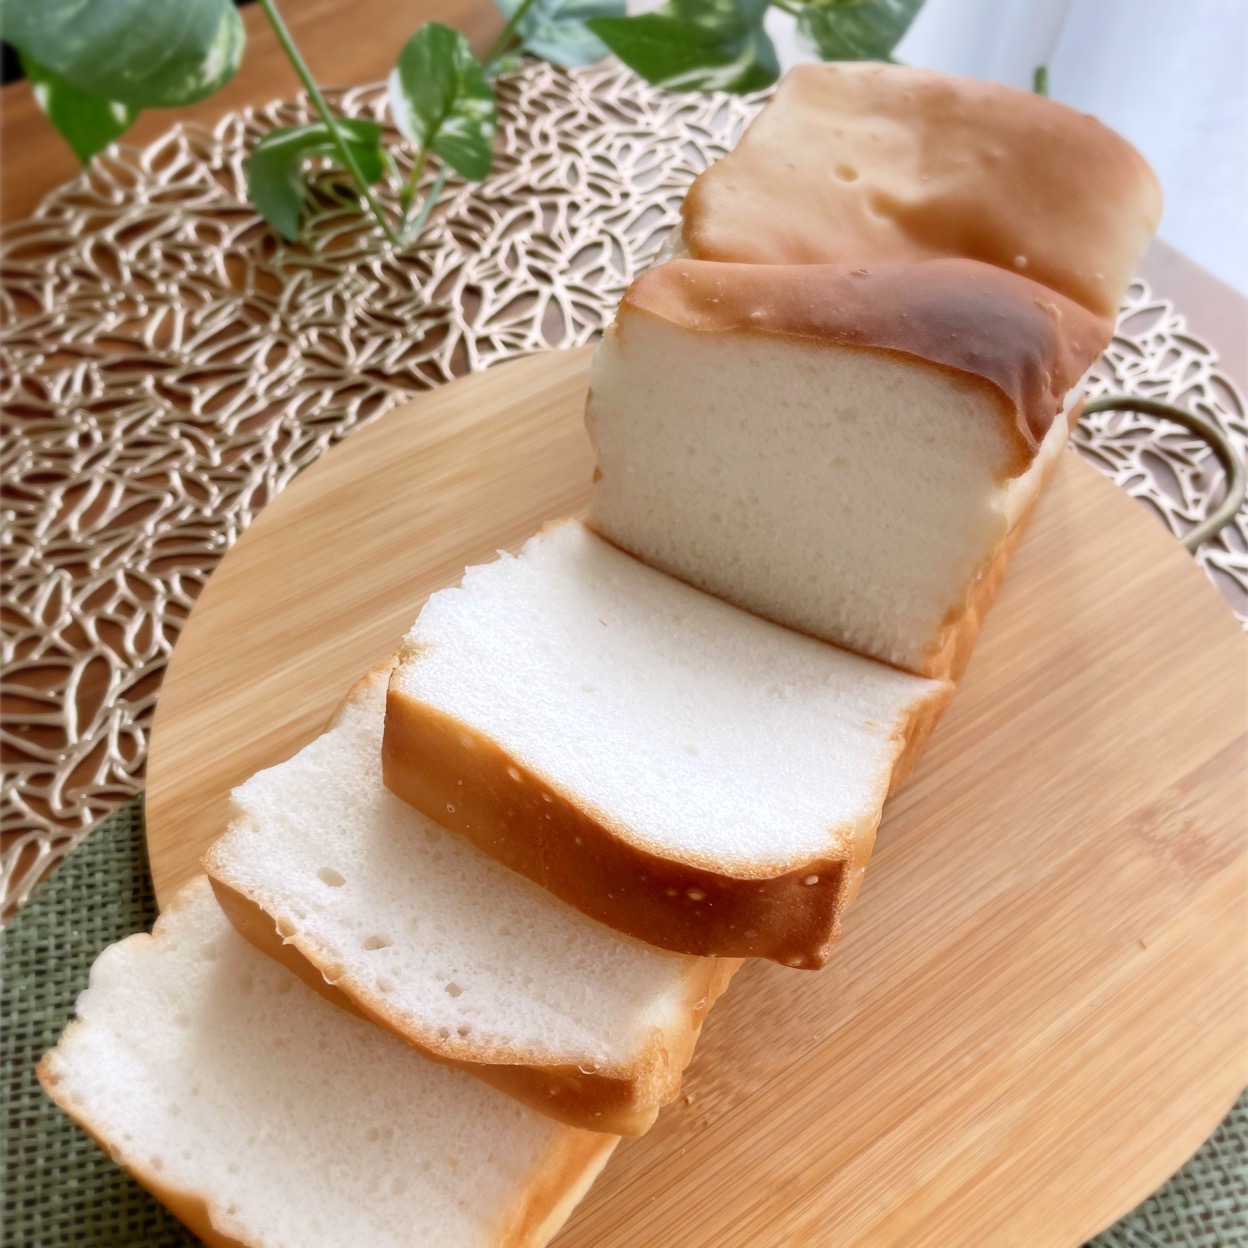 100%米粉使用☆米粉食パン